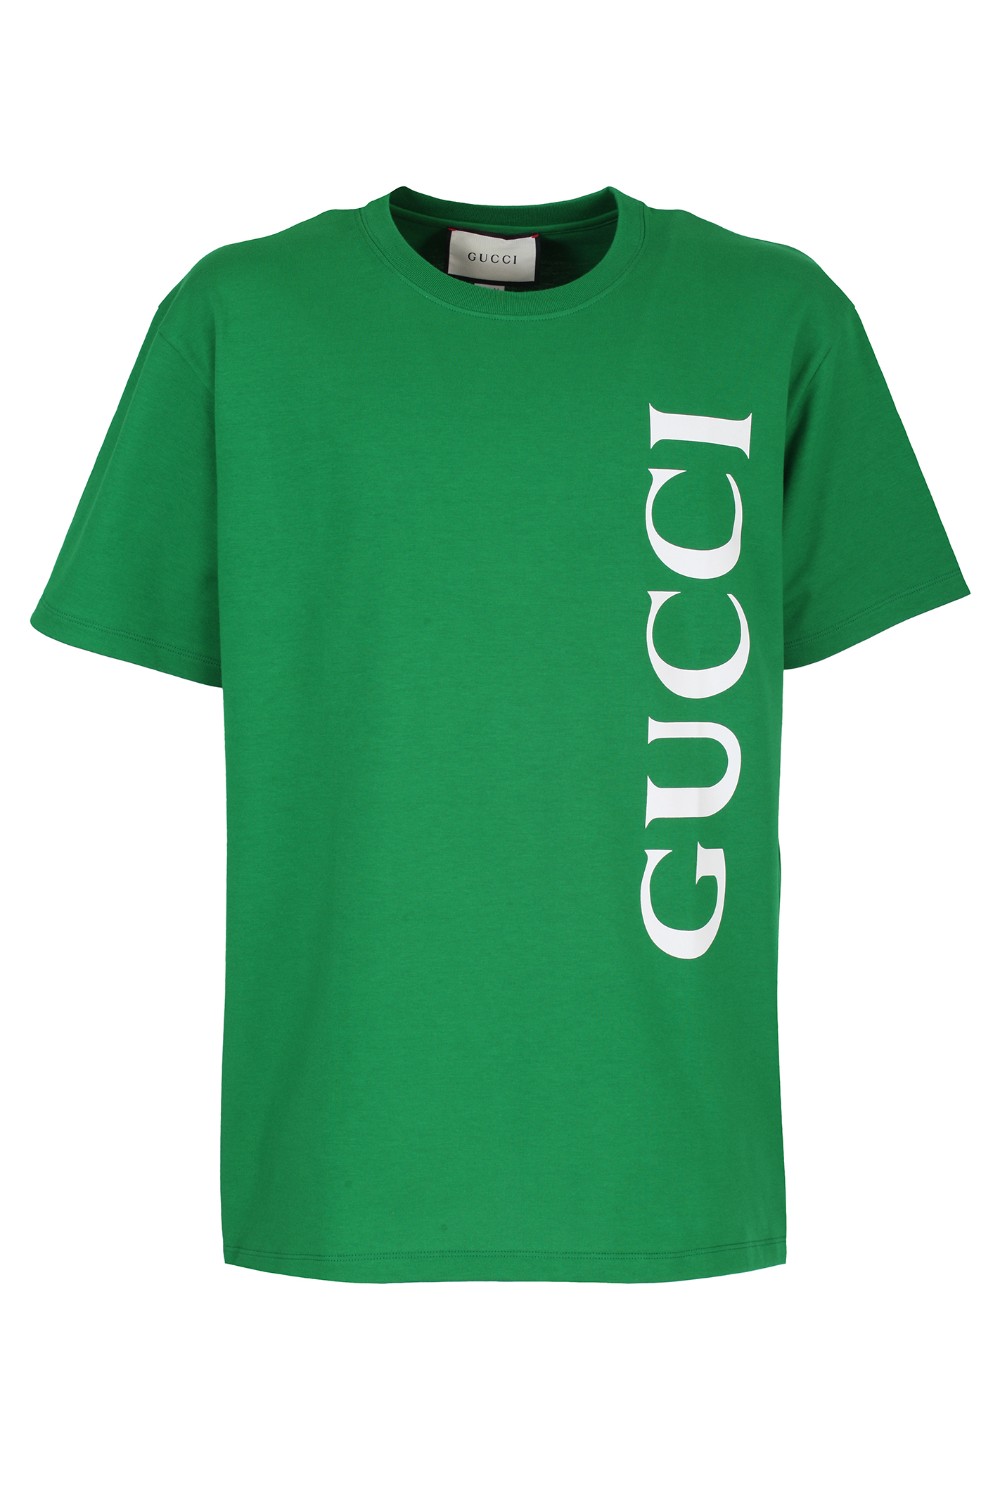 shop GUCCI Saldi T-shirt: Gucci t-shirt in Jersey di cotone verde.
Girocllo.
Maniche corte.
Stampa Logo Gucci vintage bianco.
Oversize.
Composizione: 100% cotone.
Made in Italy.. 565806 XJB2V-3189 number 9725706